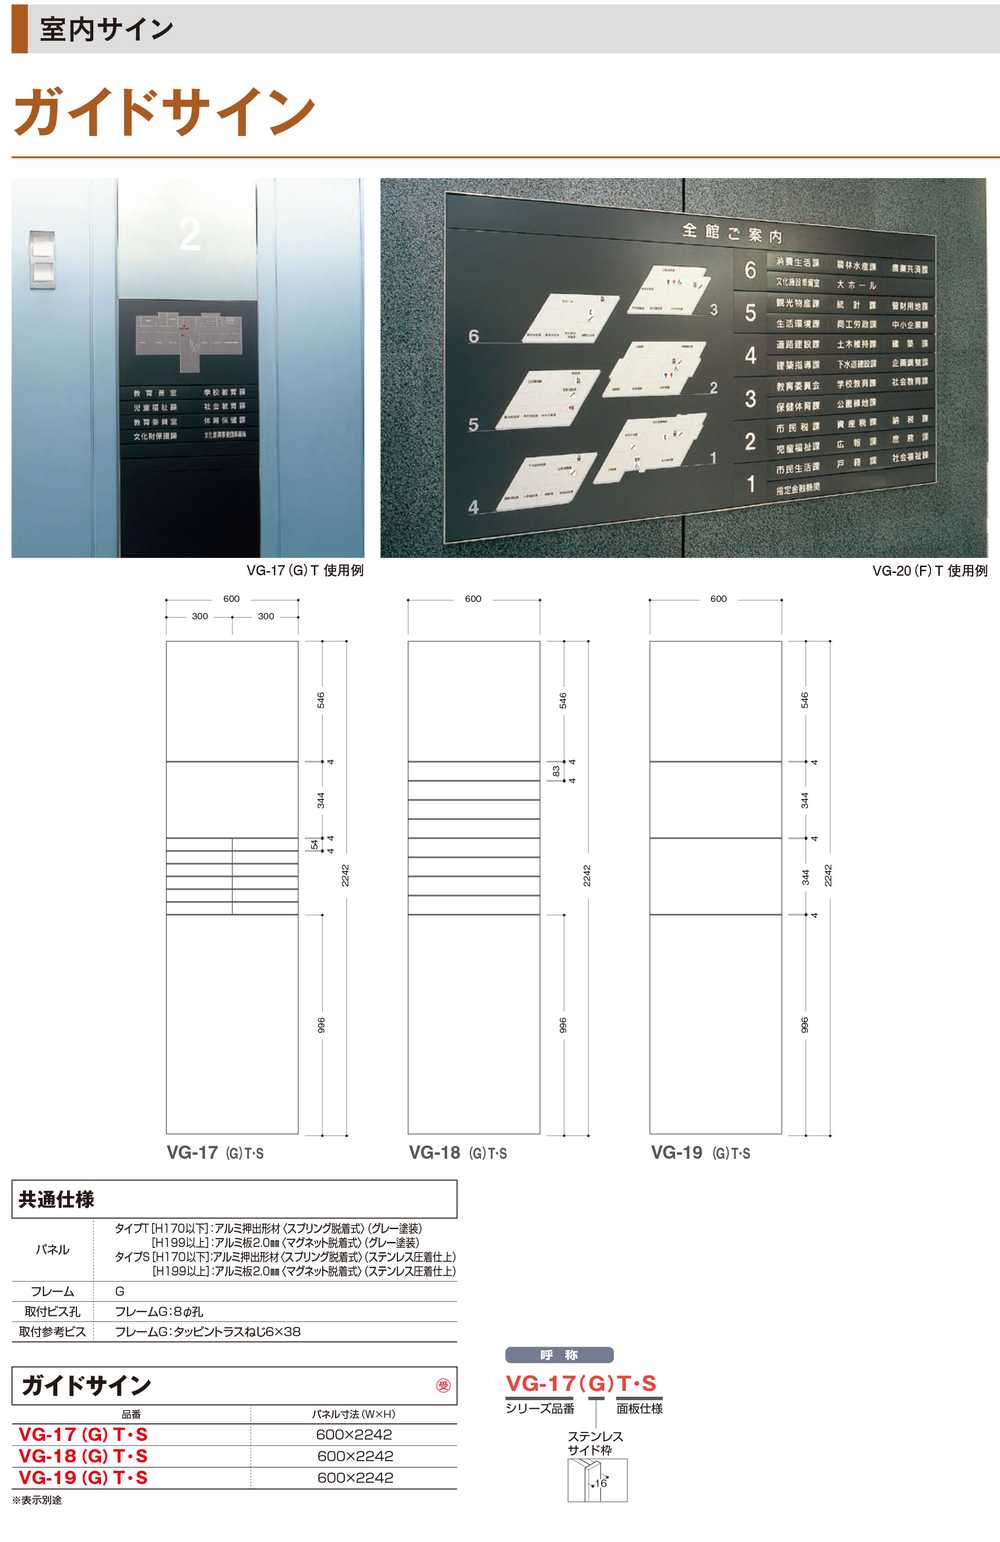 日本人気超絶の タテヤマアドバンス ガイドサイン(T面板) VG-19 TYPE G 5090505(特注CD)ガイドサイン S面板 タテヤマア  標識・案内板